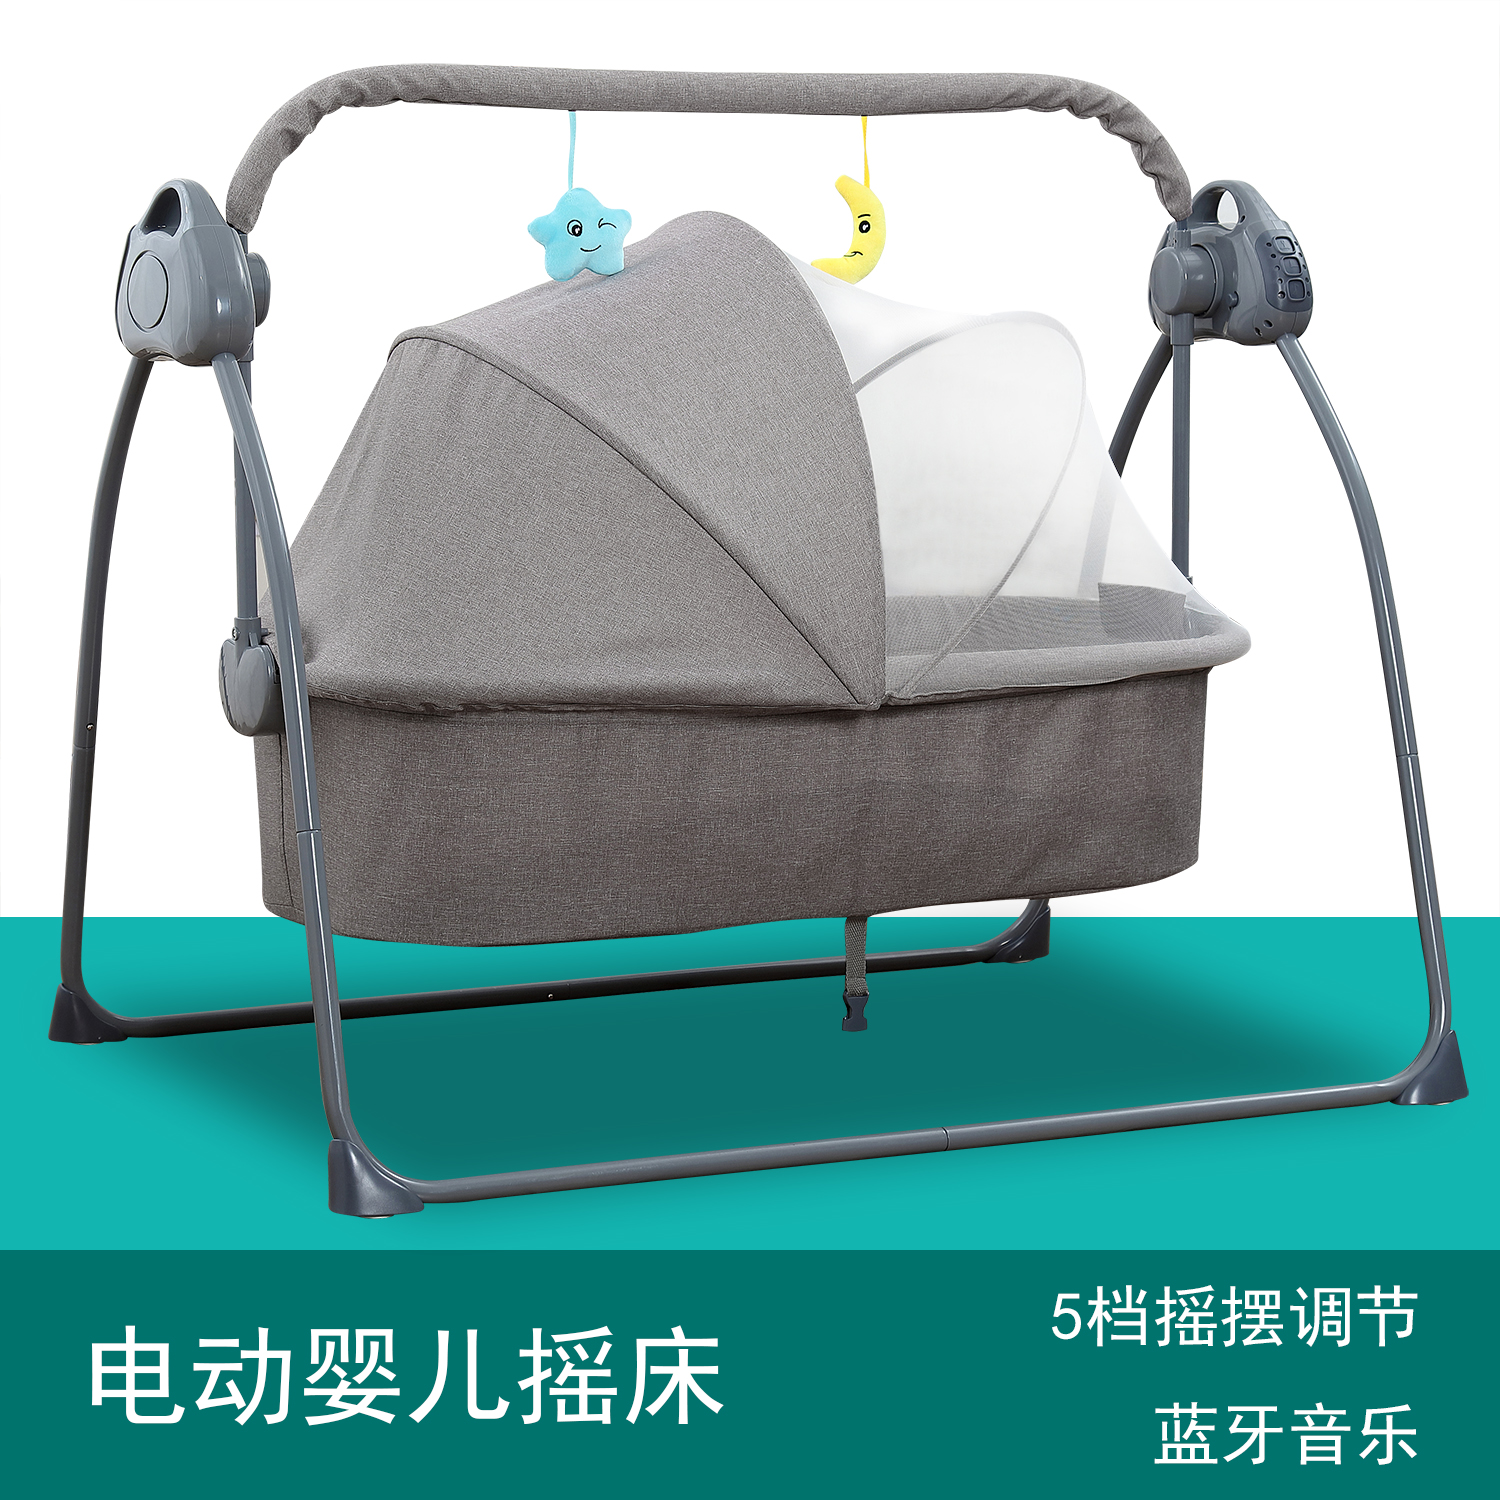 摇篮床婴儿摇摇床智能电动多功能宝宝安抚睡眠神器摆幅婴儿车吊床